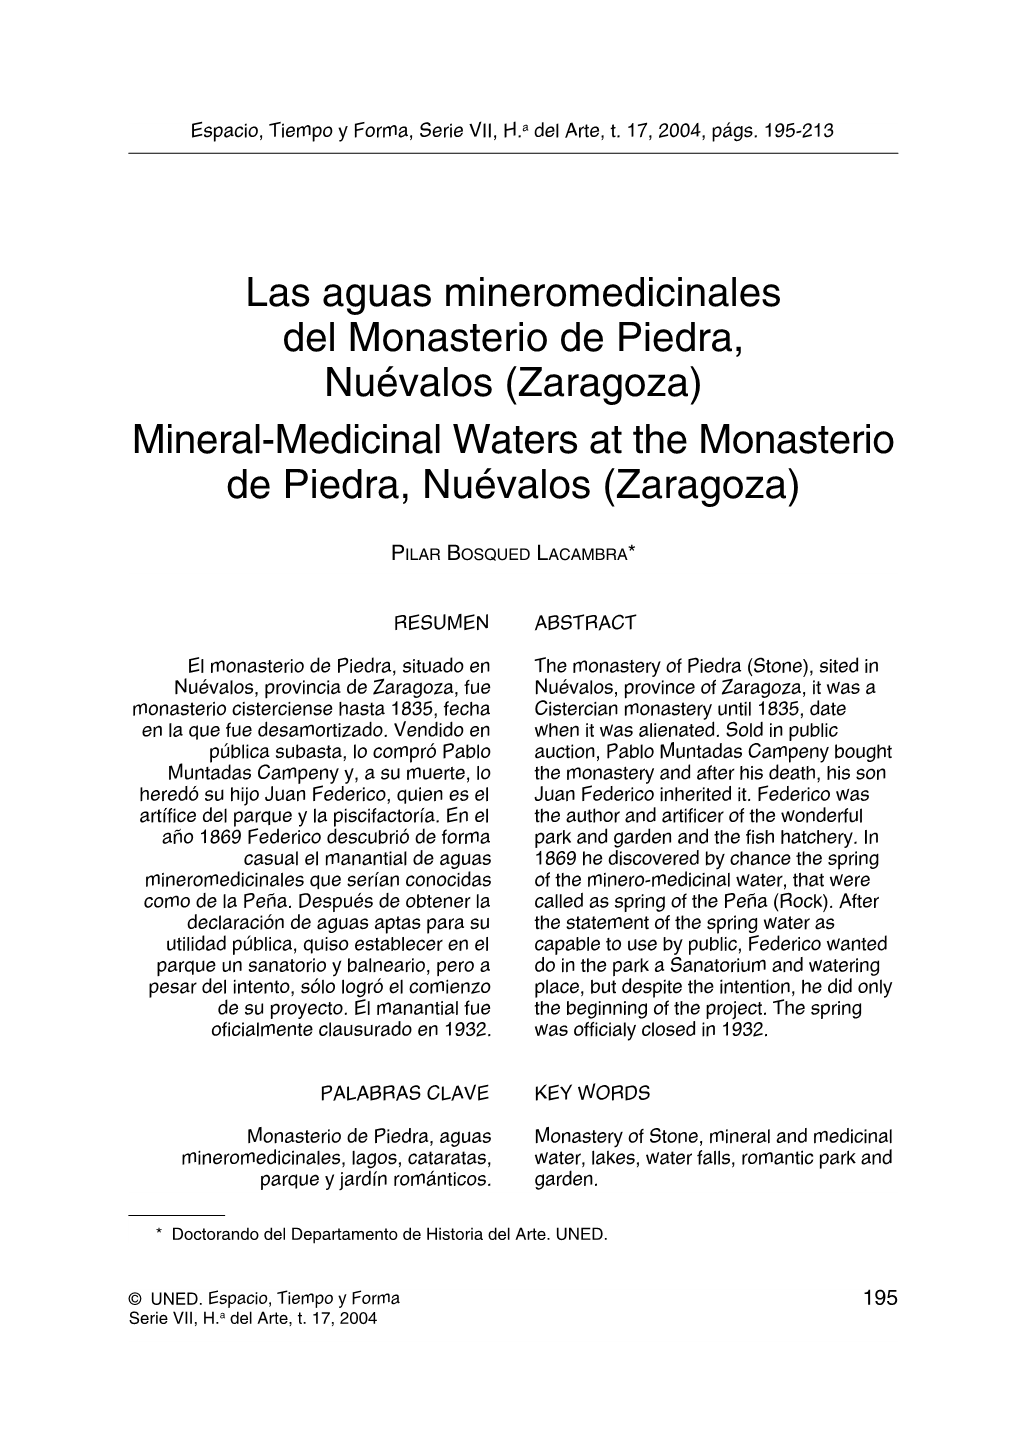 Las Aguas Mineromedicinales Del Monasterio De Piedra, Nuévalos (Zaragoza) Mineral-Medicinal Waters at the Monasterio De Piedra, Nuévalos (Zaragoza)